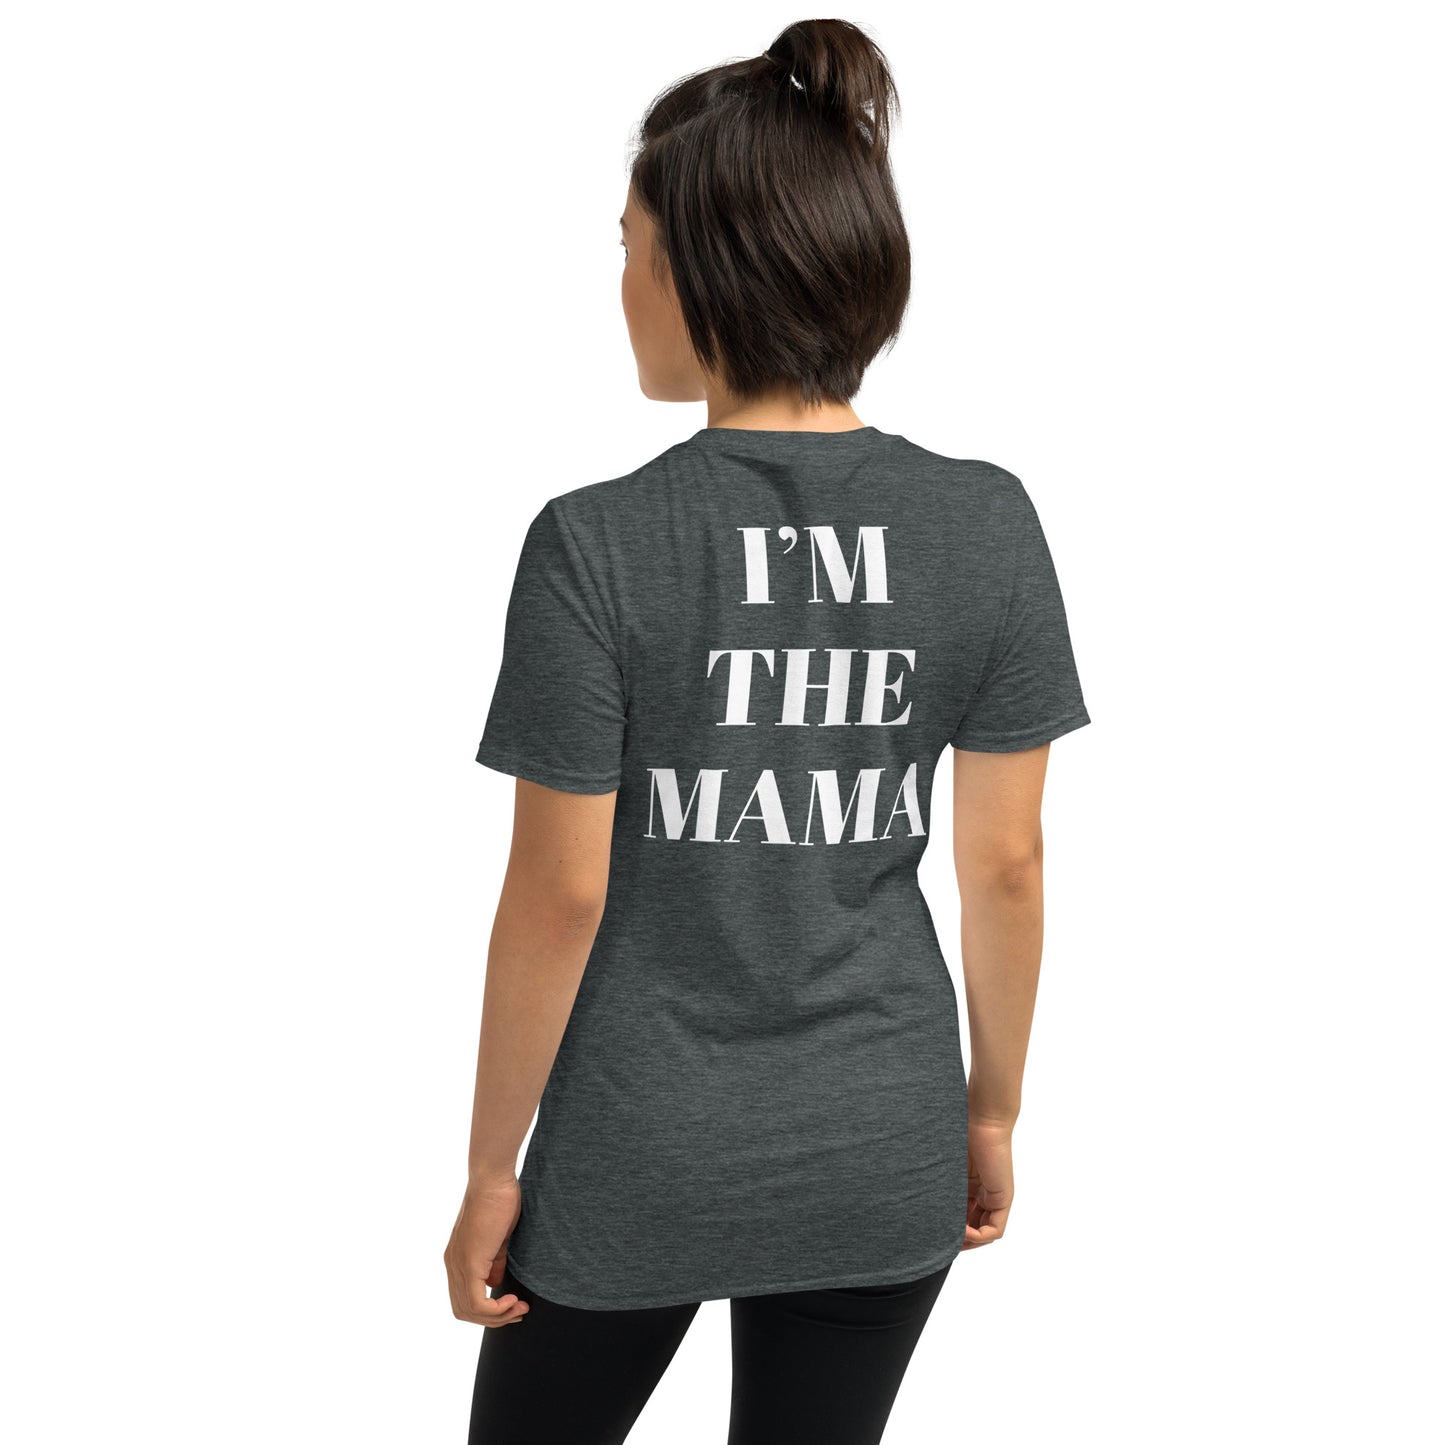 I’m the mama Short-Sleeve Unisex T-Shirt